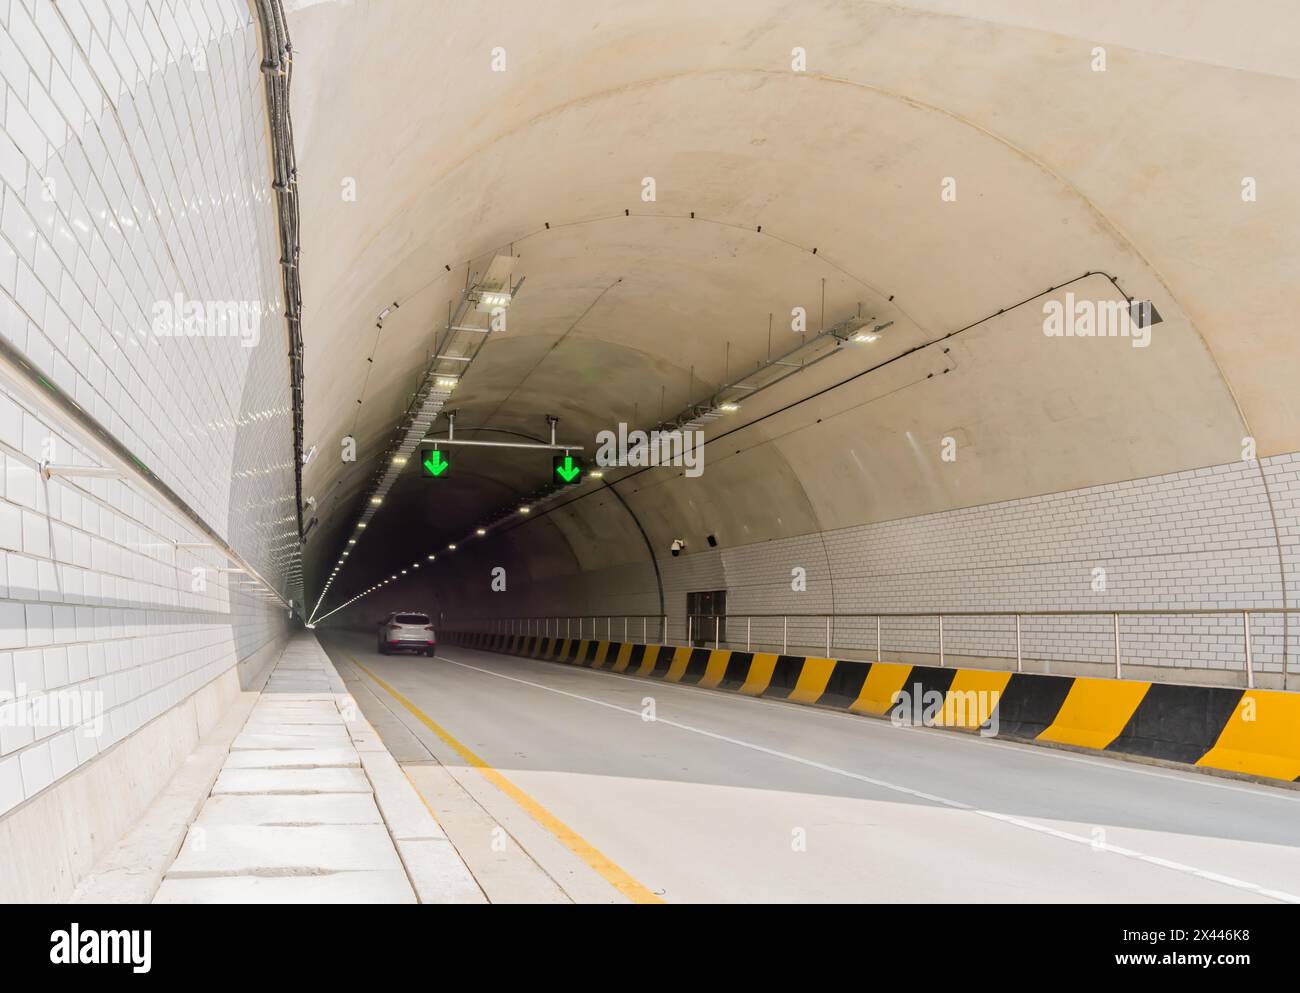 Zweispuriger Autobahntunnel aus weißem Beton mit Leuchtstofflampen und grünen Pfeilen an der Decke und Stromkabeln, die an der Seitenwand hinunter laufen Stockfoto